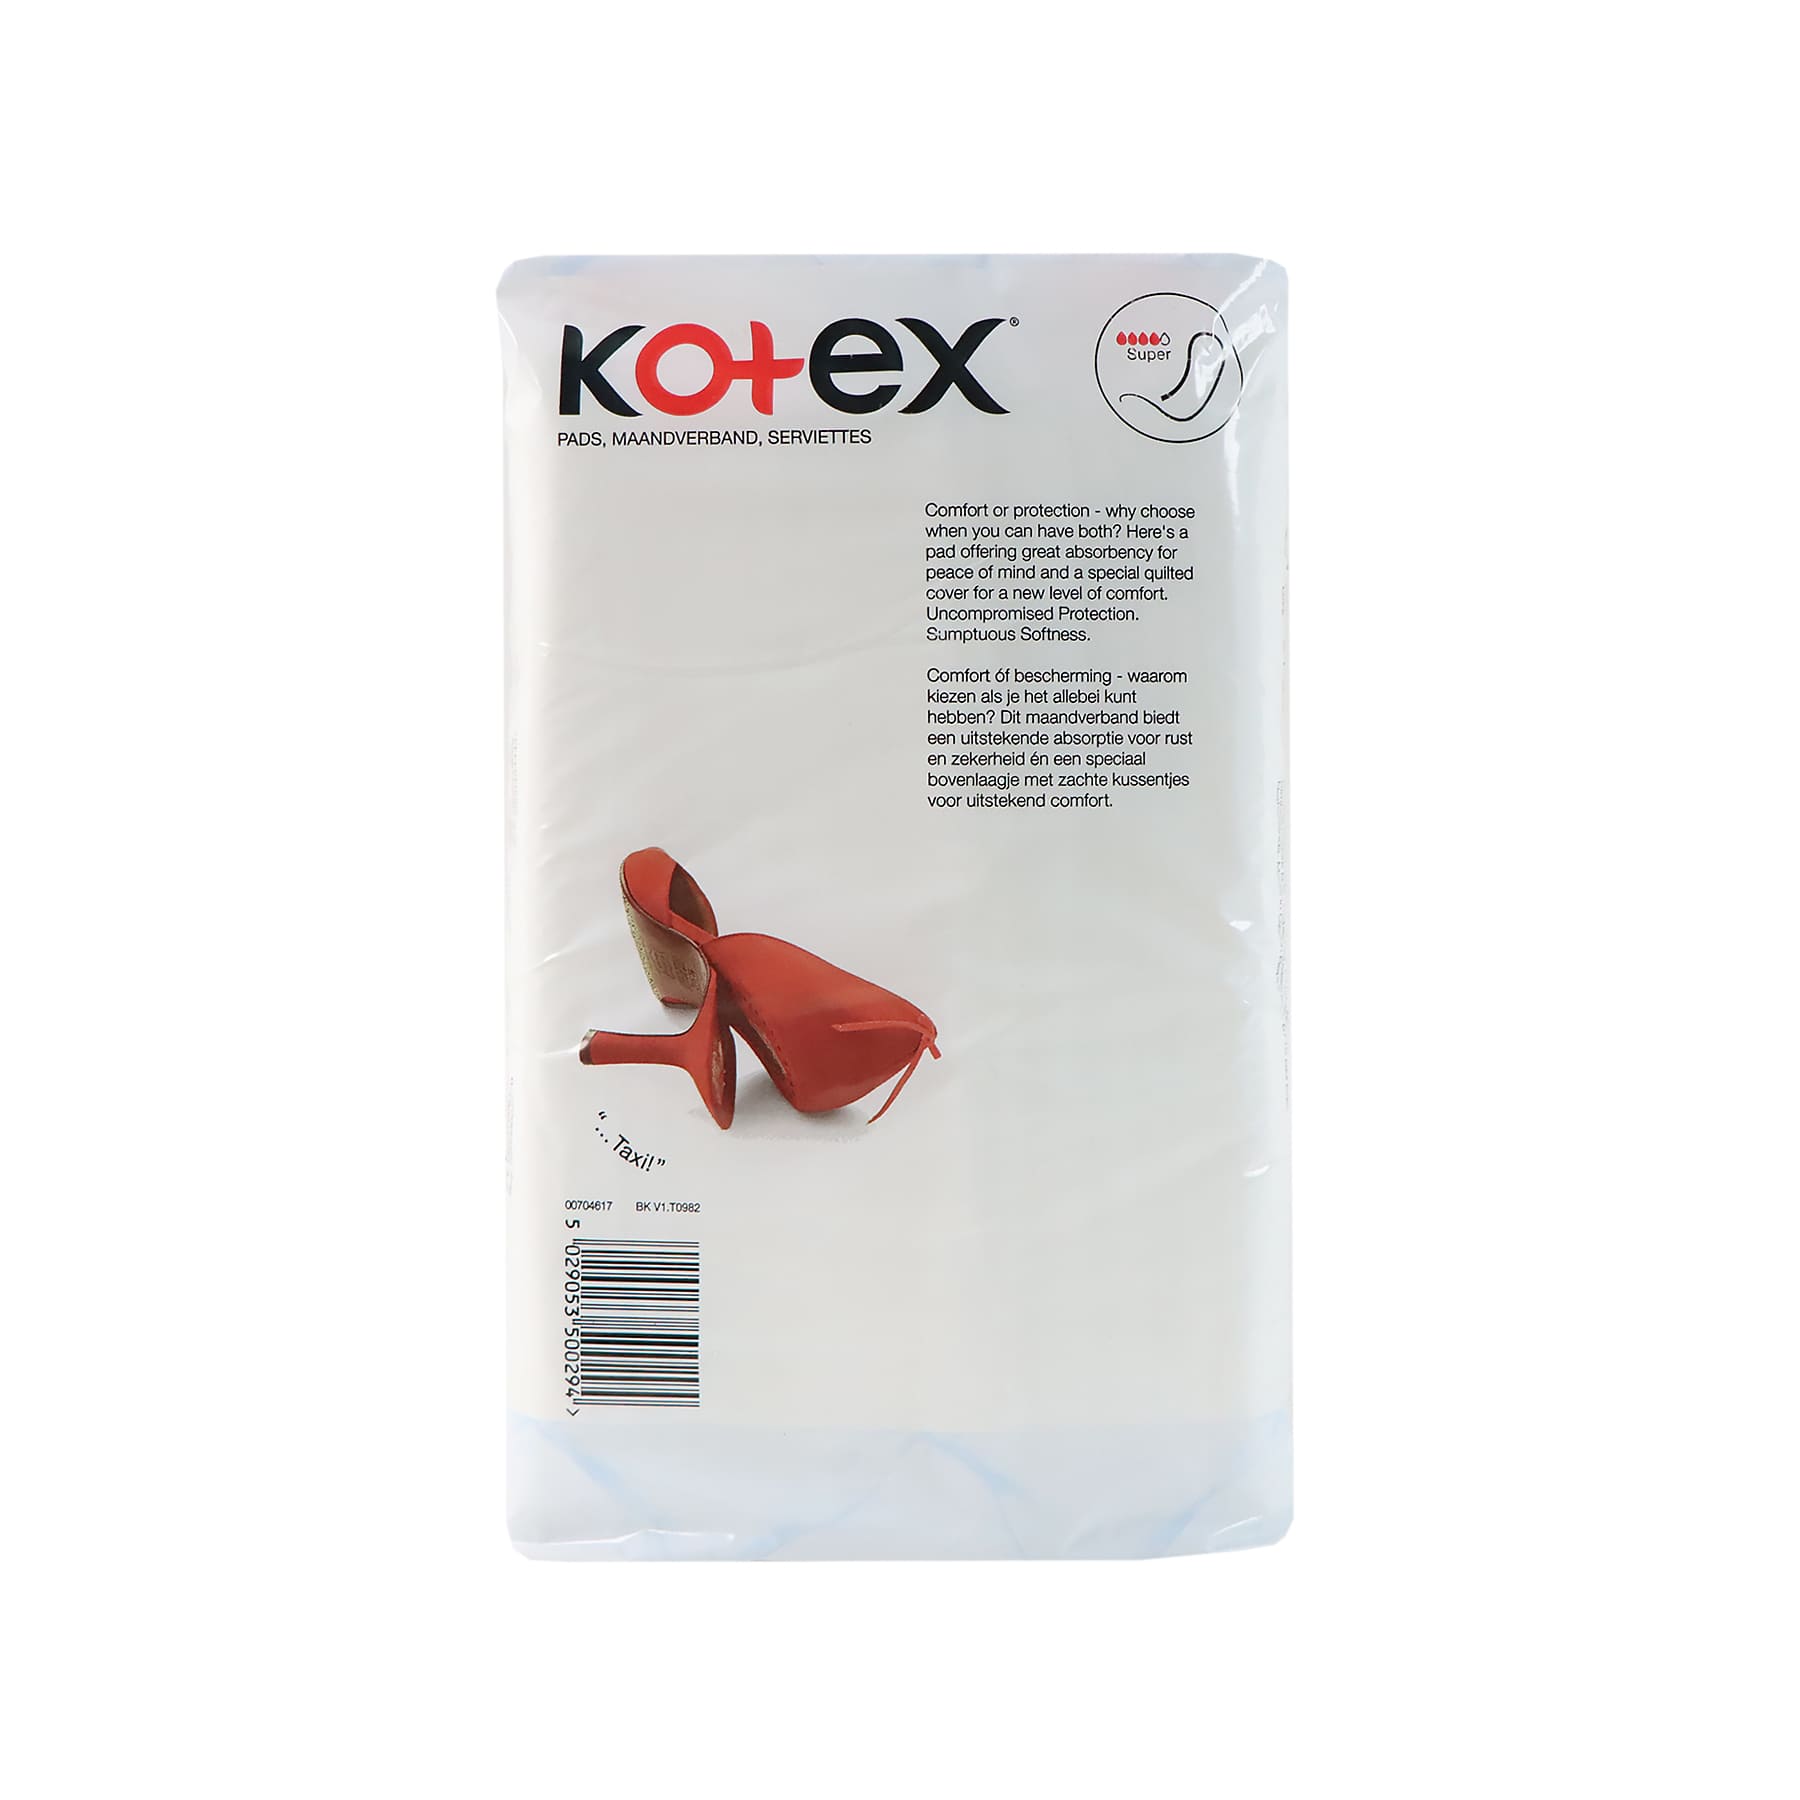 Kotex 高潔絲 特級棉柔無翼衛生巾(多量型 27.5cm) 16片